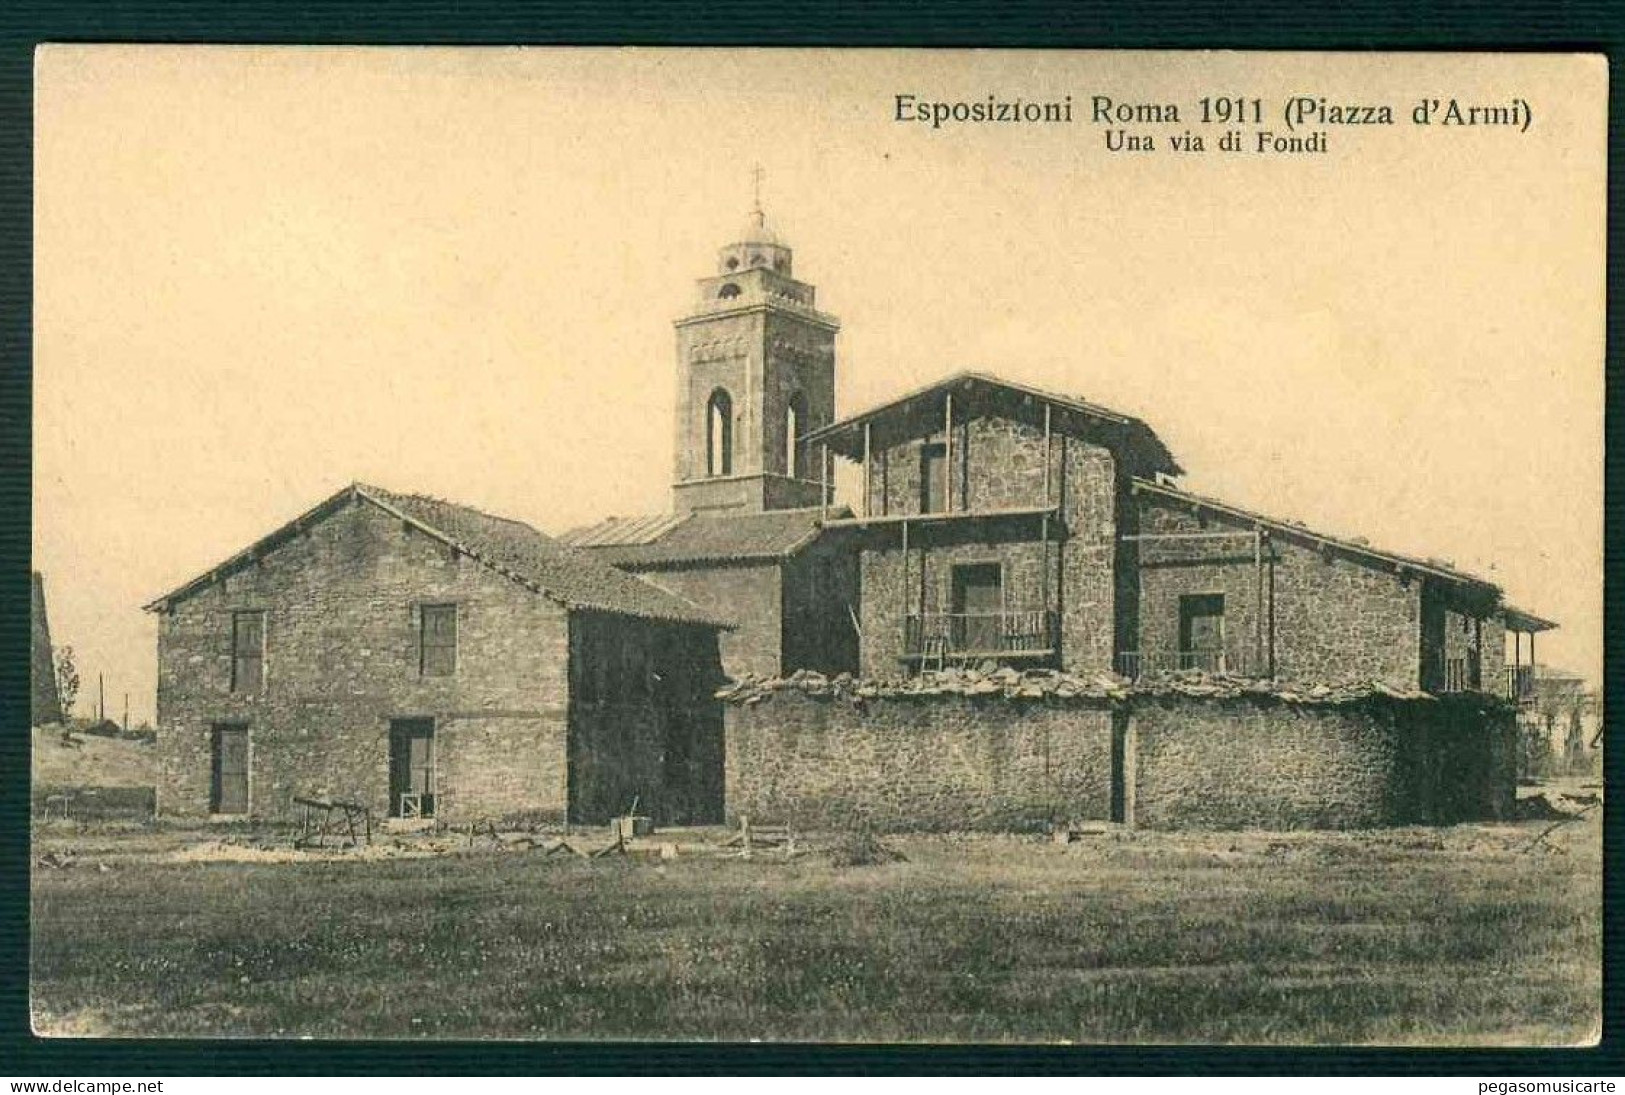 VX235 - ESPOSIZIONI ROMA 1911 - PIAZZA D'ARMI - UNA VIA DI FONDI - Mostre, Esposizioni